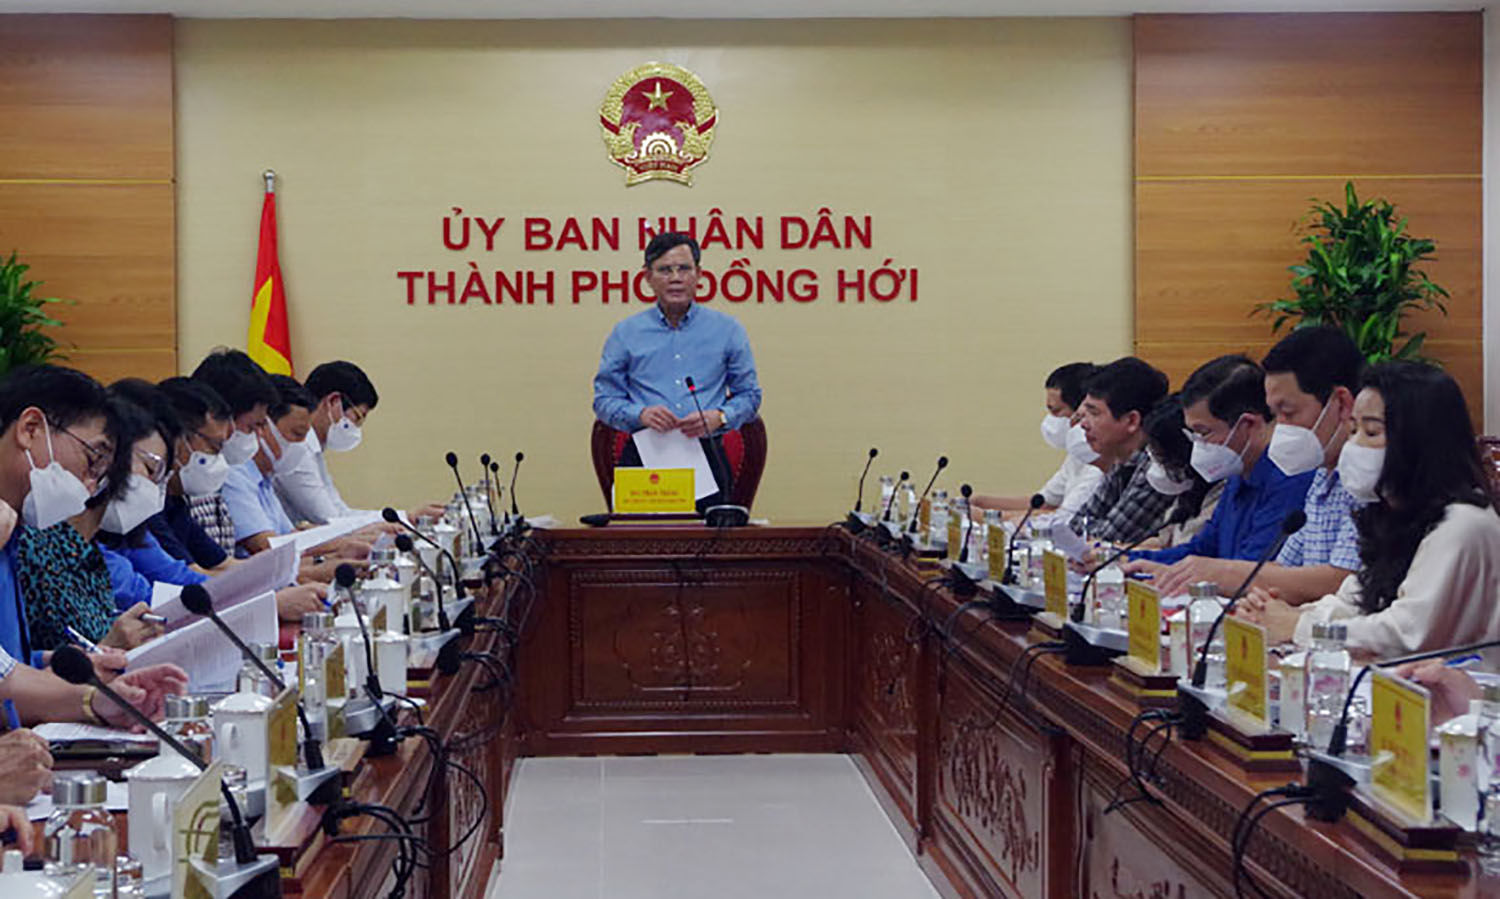 Đồng chí Trần Thắng, Phó Bí thư Tỉnh ủy, Chủ tịch UBND tỉnh phát biểu chỉ đạo tại buổi làm việc.